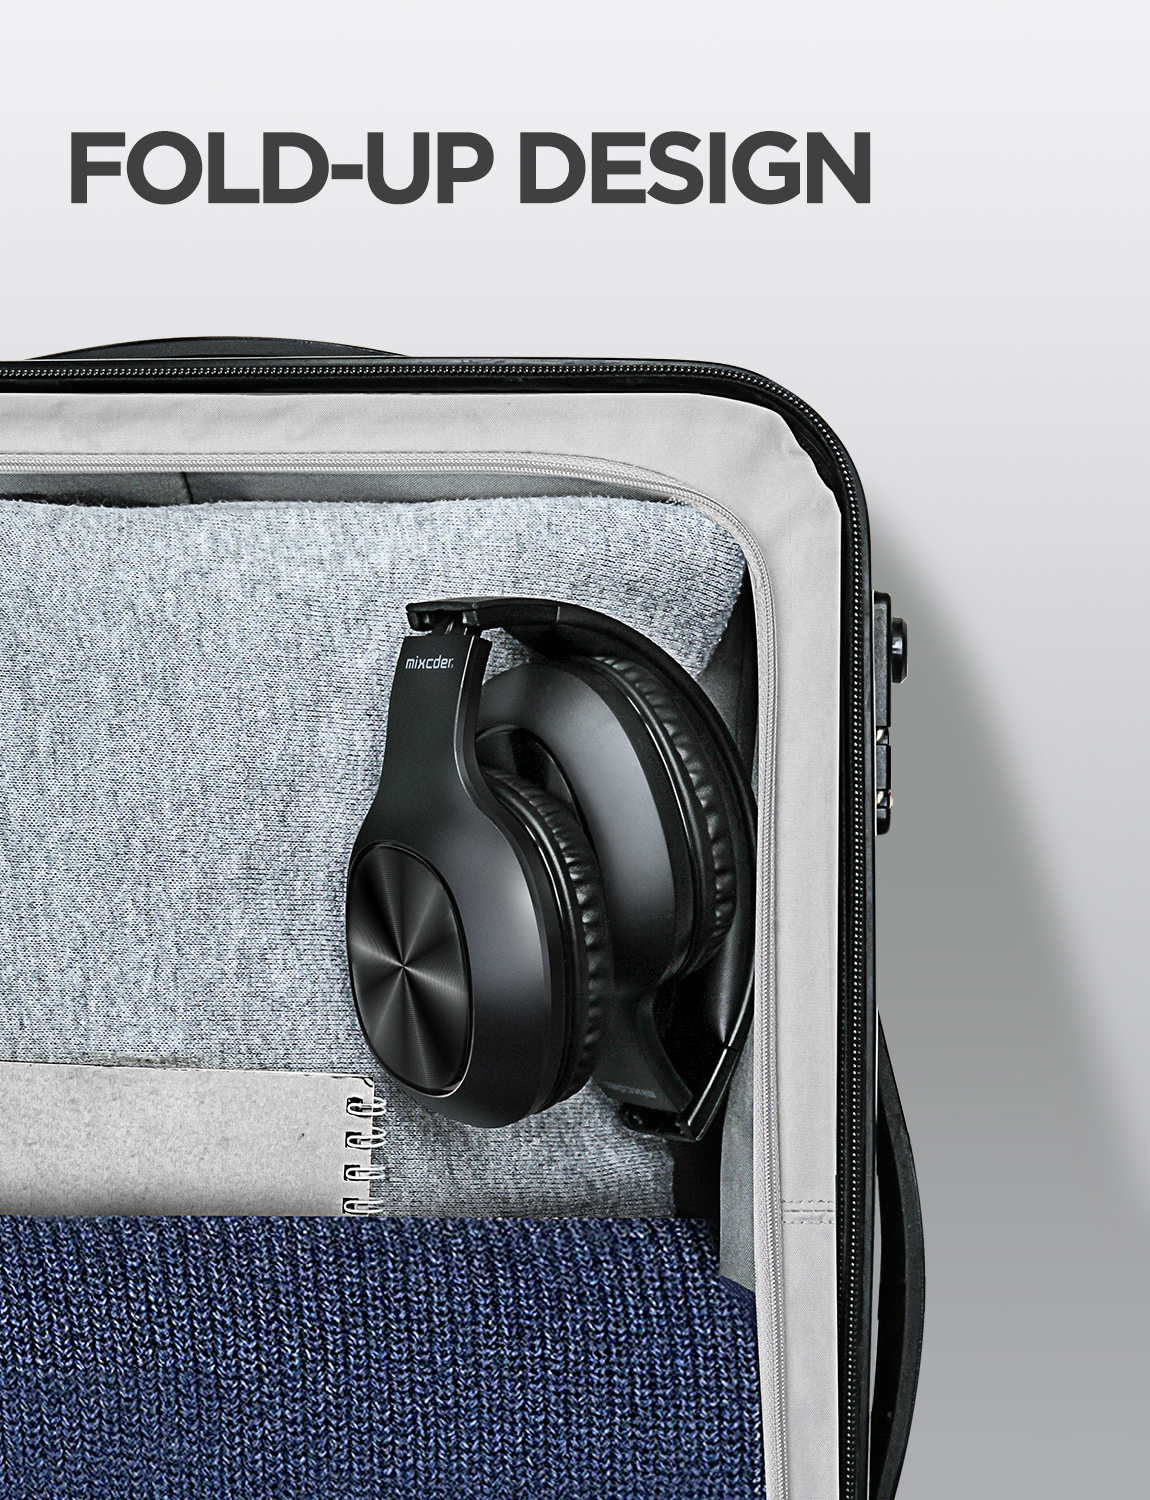 Mixcder HD901 - Fold-up Design